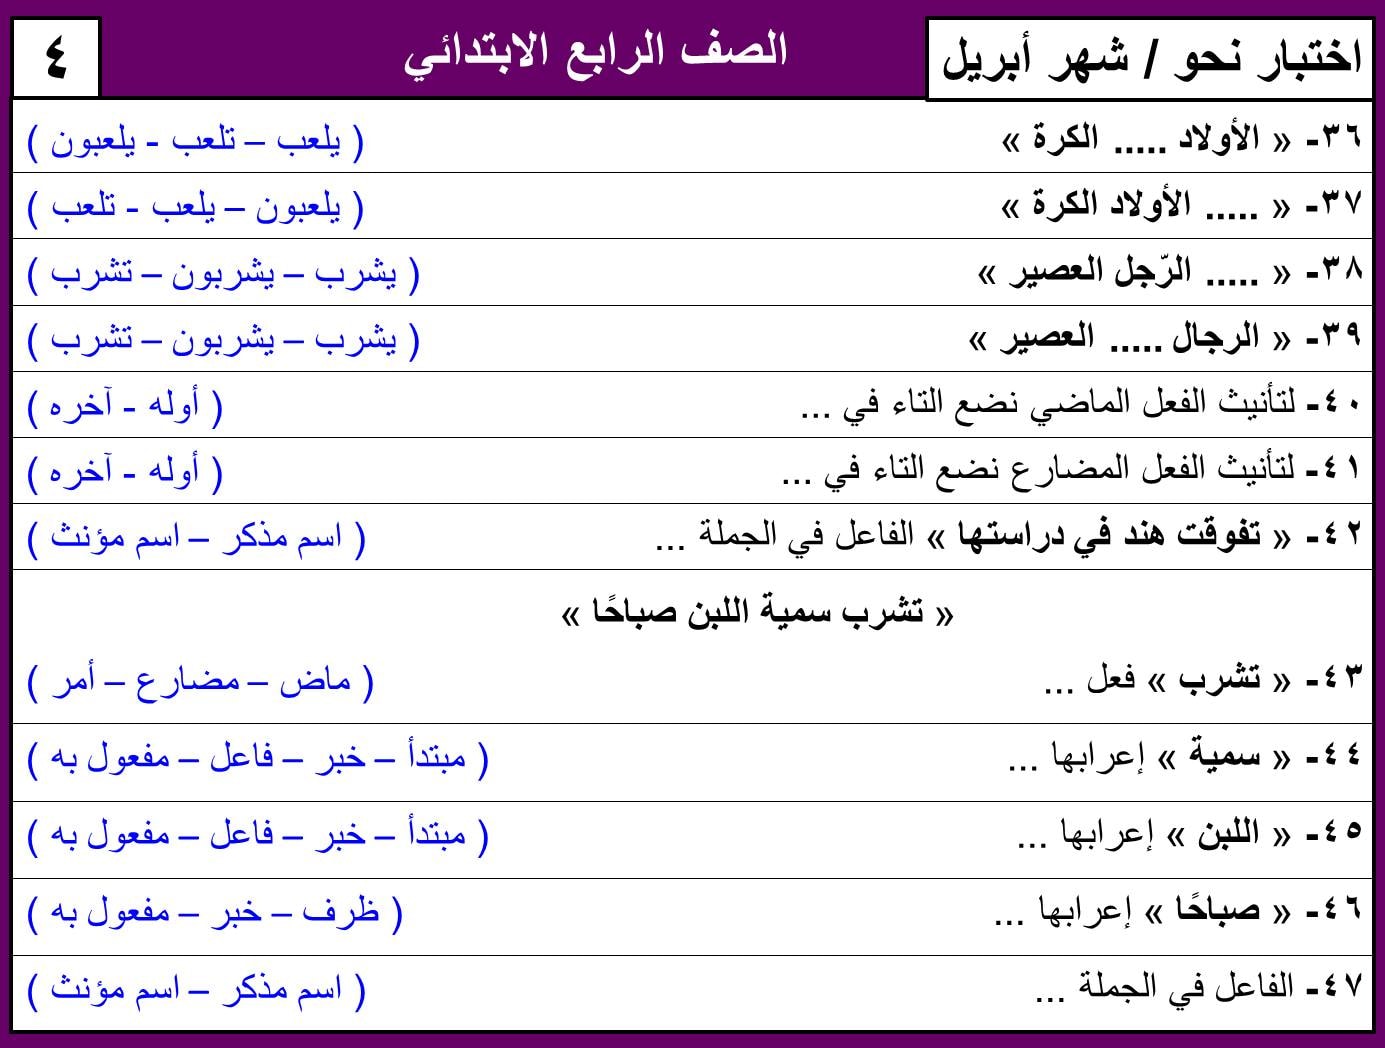 نماذج امتحان لغة عربية منهج ابريل الصف الرابع الابتدائي ترم ثاني بالاجابات 10